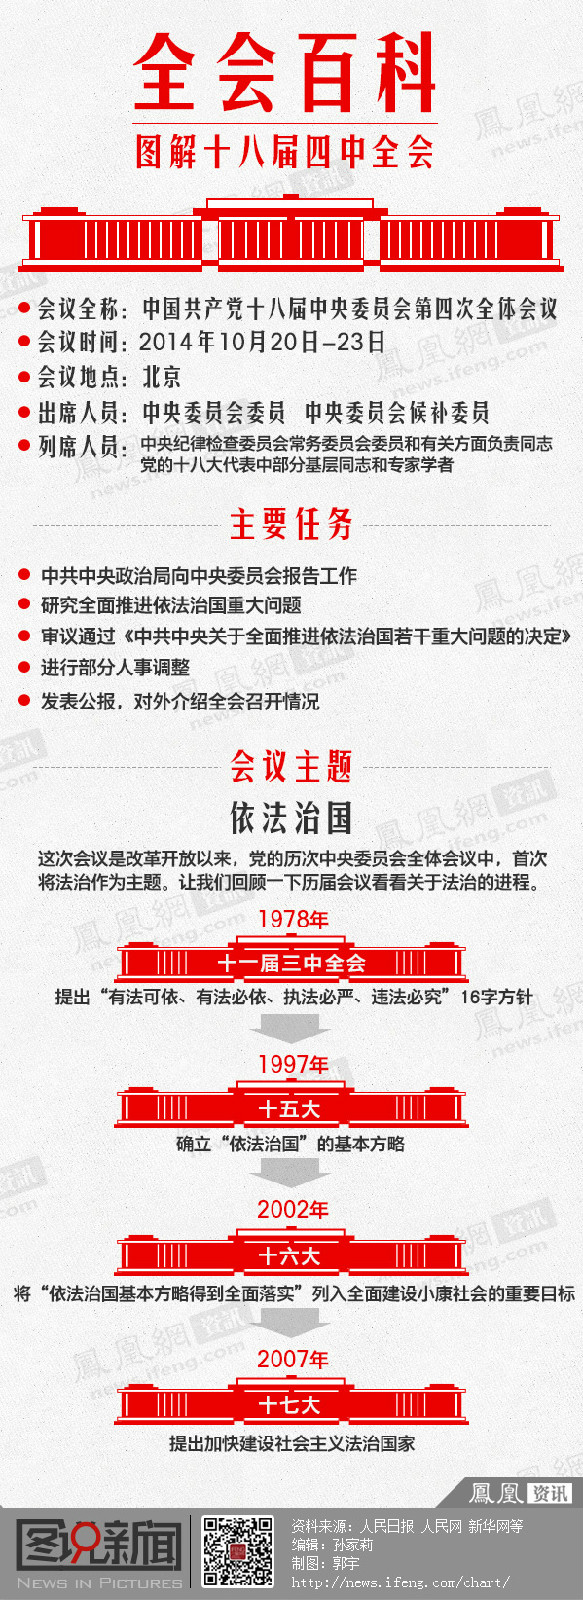 中國共產黨第十八屆中央委員會第四次全體會議(十八屆四中全會)